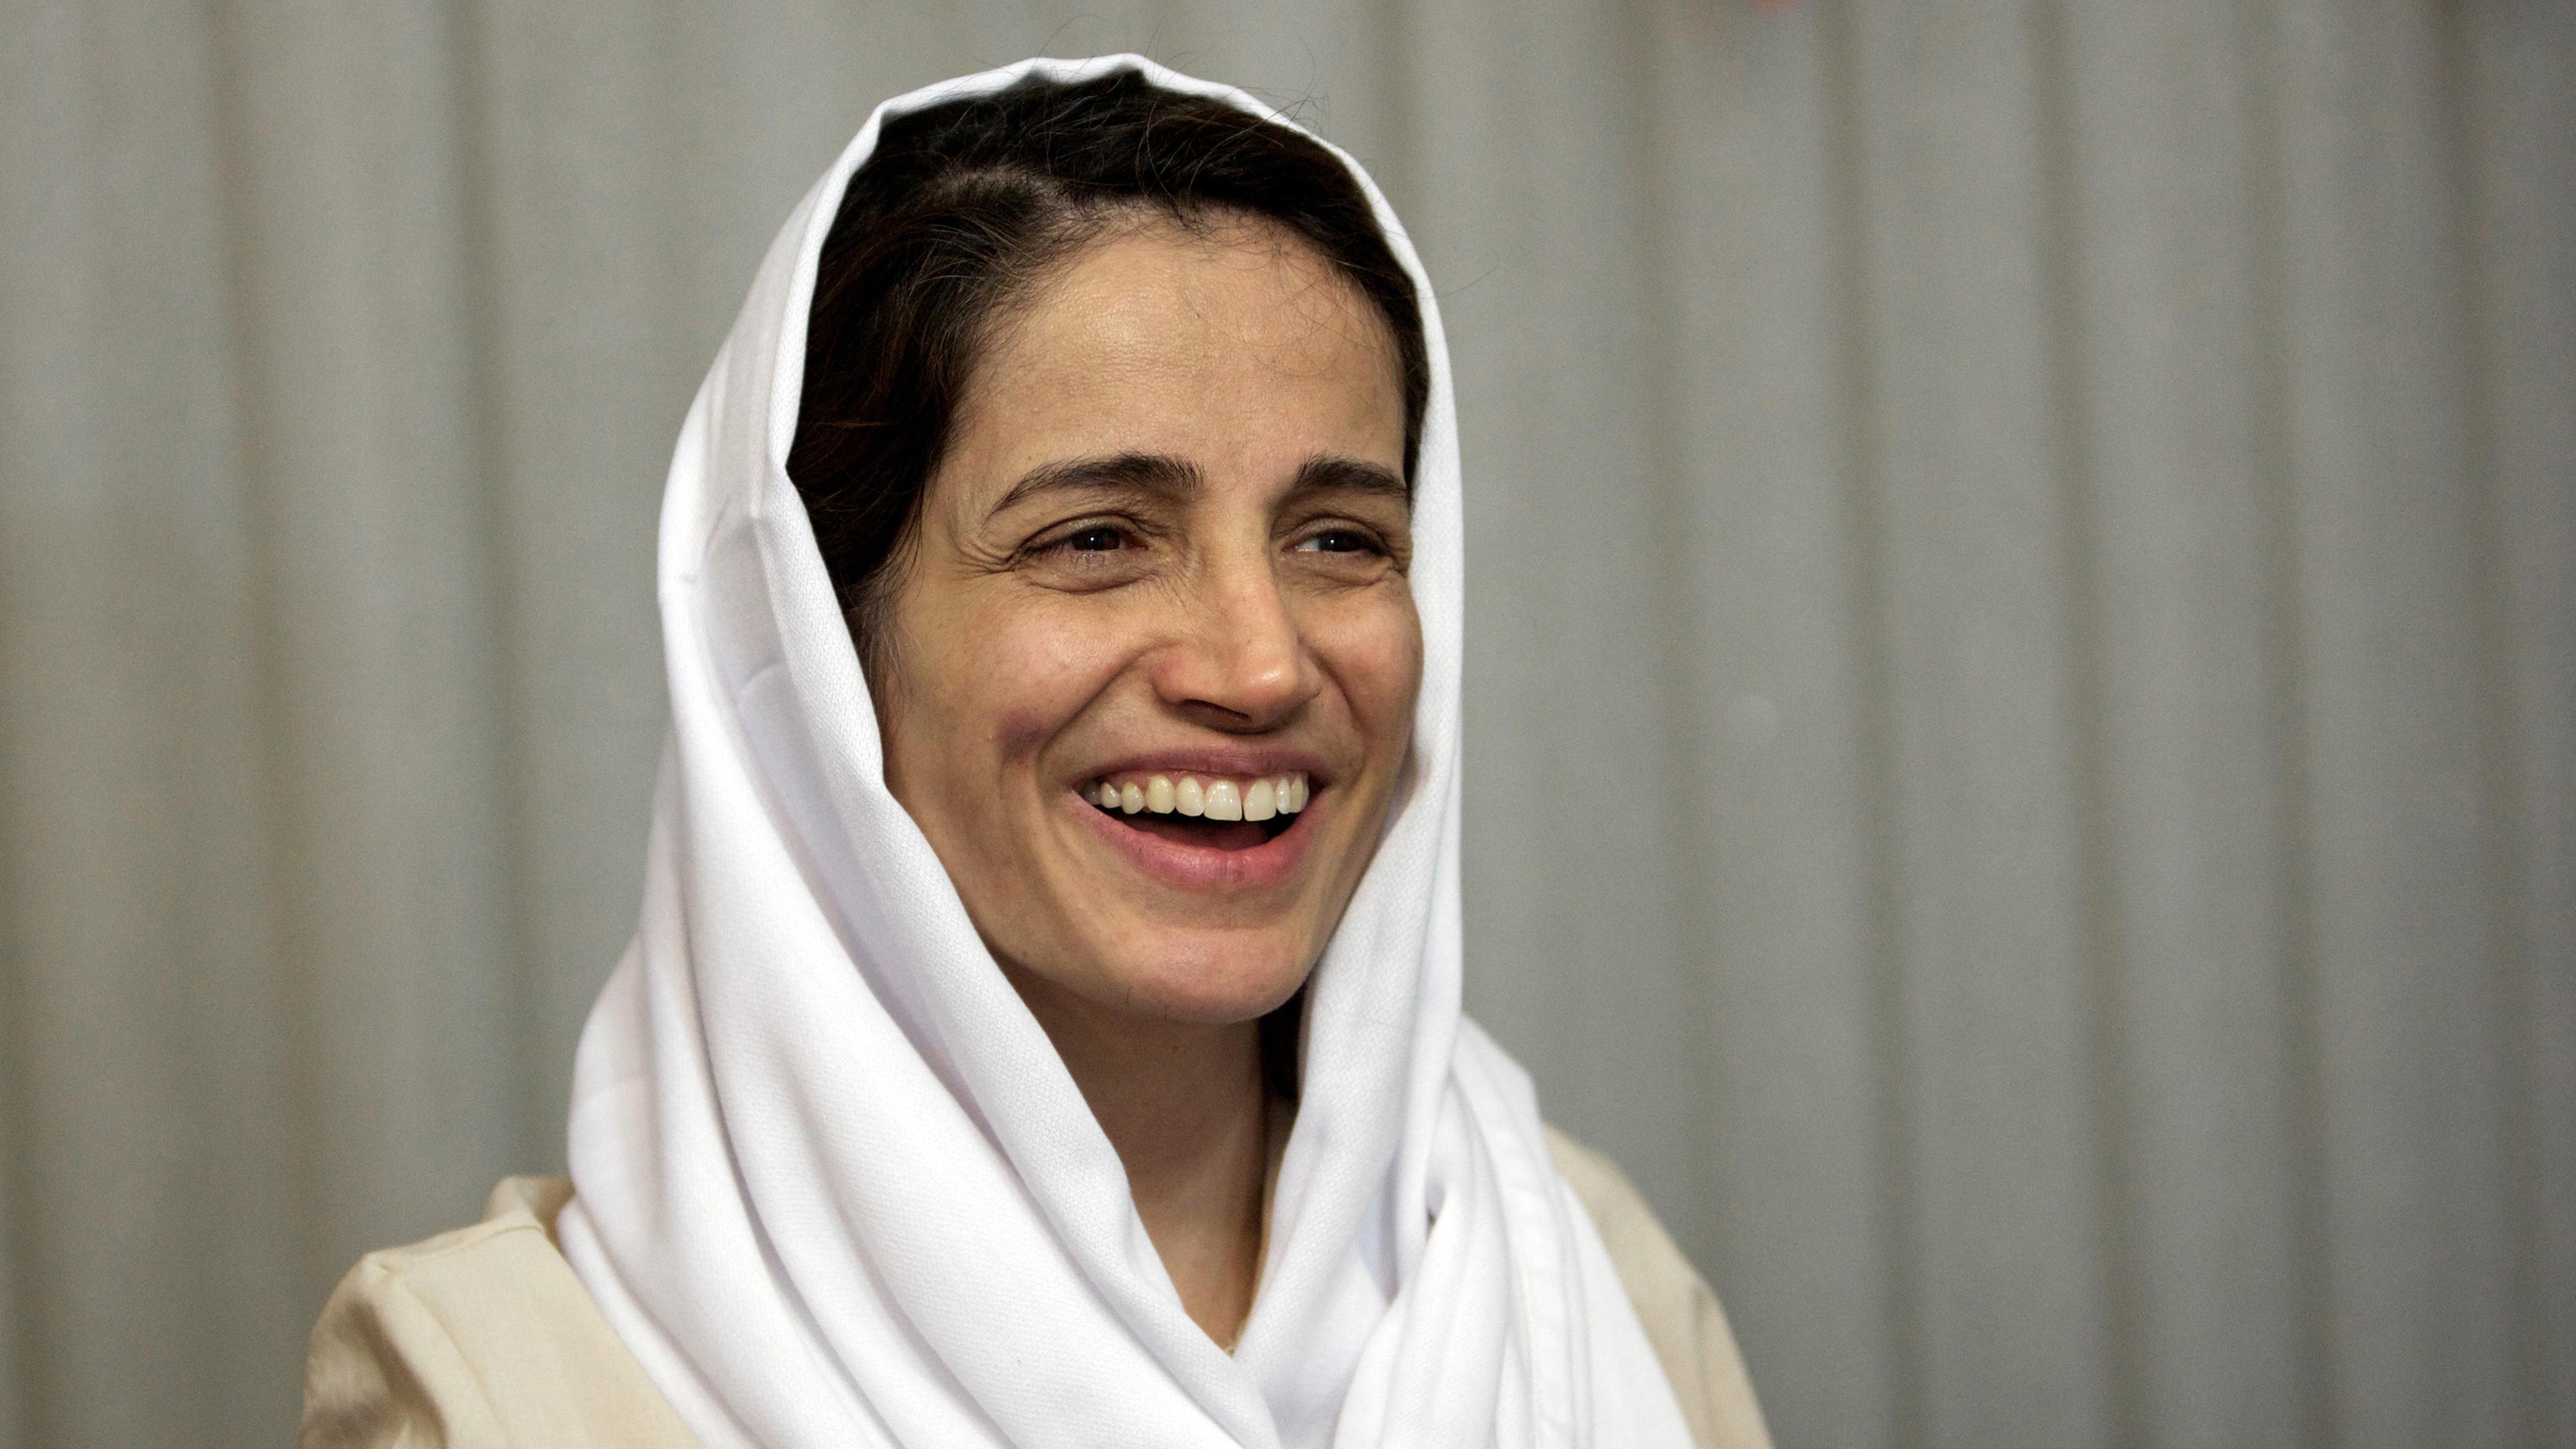 Iran, Teheran: Nasrin Sotudeh, iranische Anwältin, Archivbild